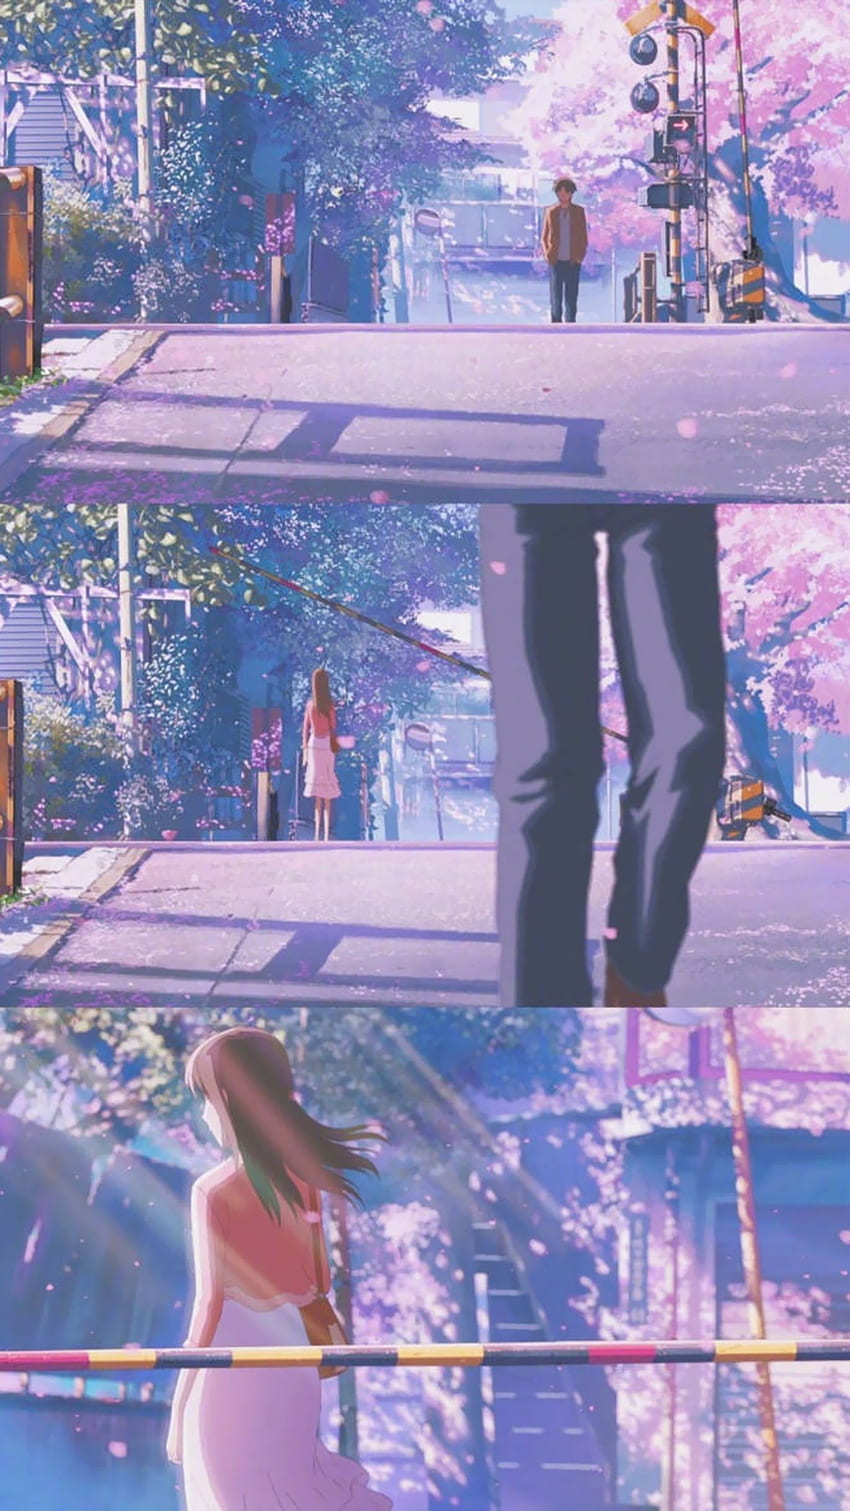 Nao lòng chùm ảnh Tokyo trong anime 5cm/s đẹp y hệt đời thực: Vẻ đẹp của  tình yêu xa, của sự đợi chờ, của nỗi buồn giữa lòng thành phố